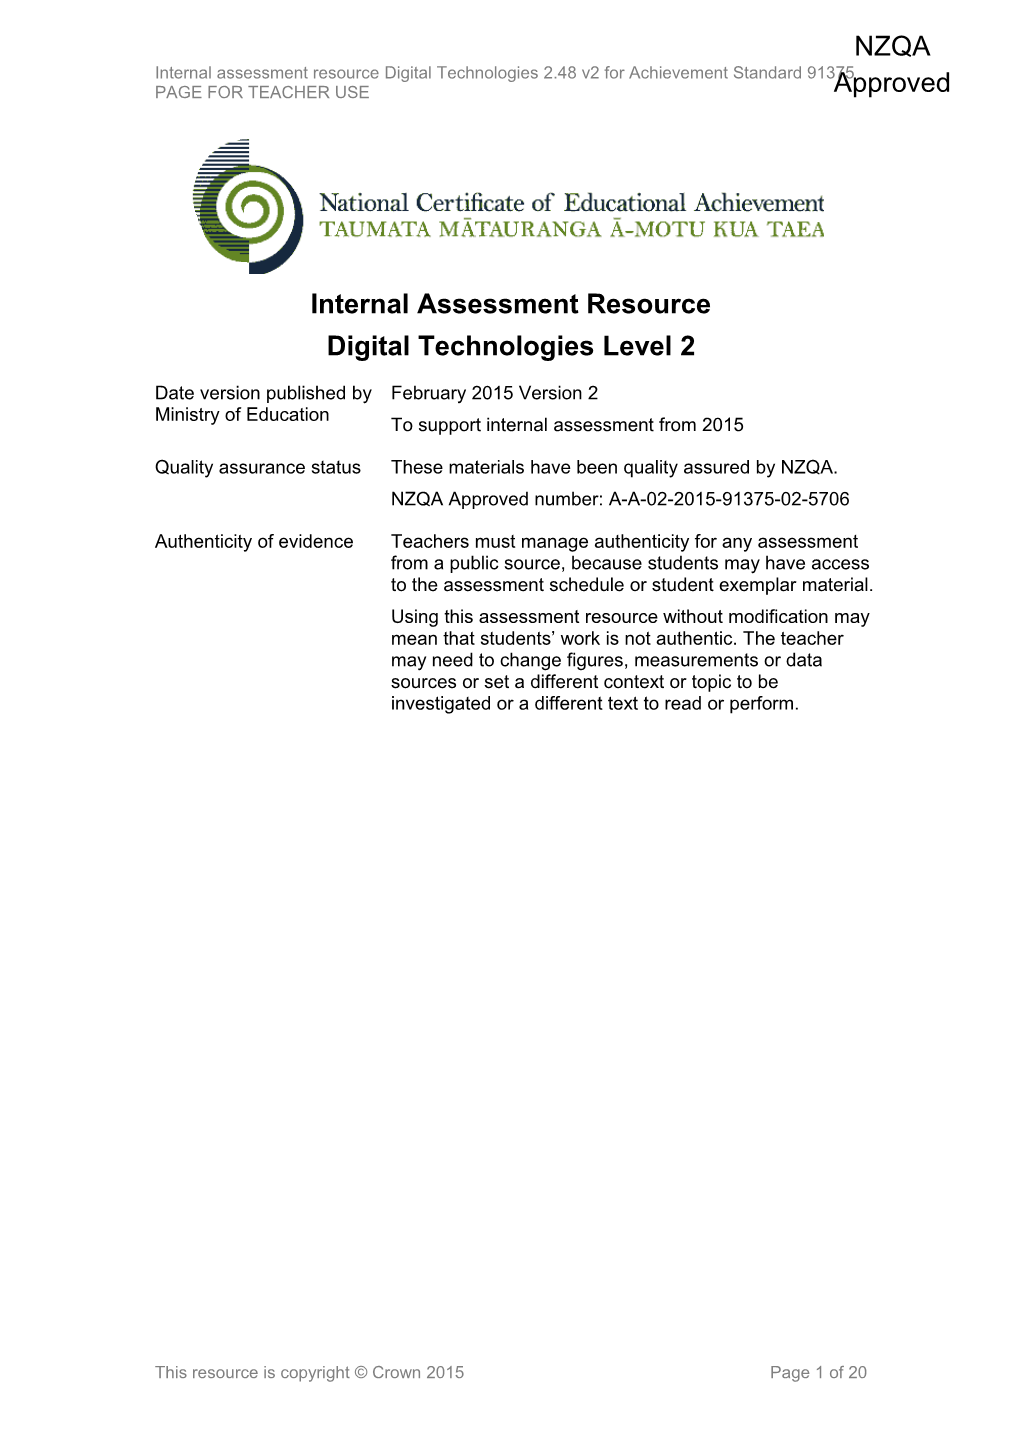 Level 2 Digital Technologies Internal Assessment Resource